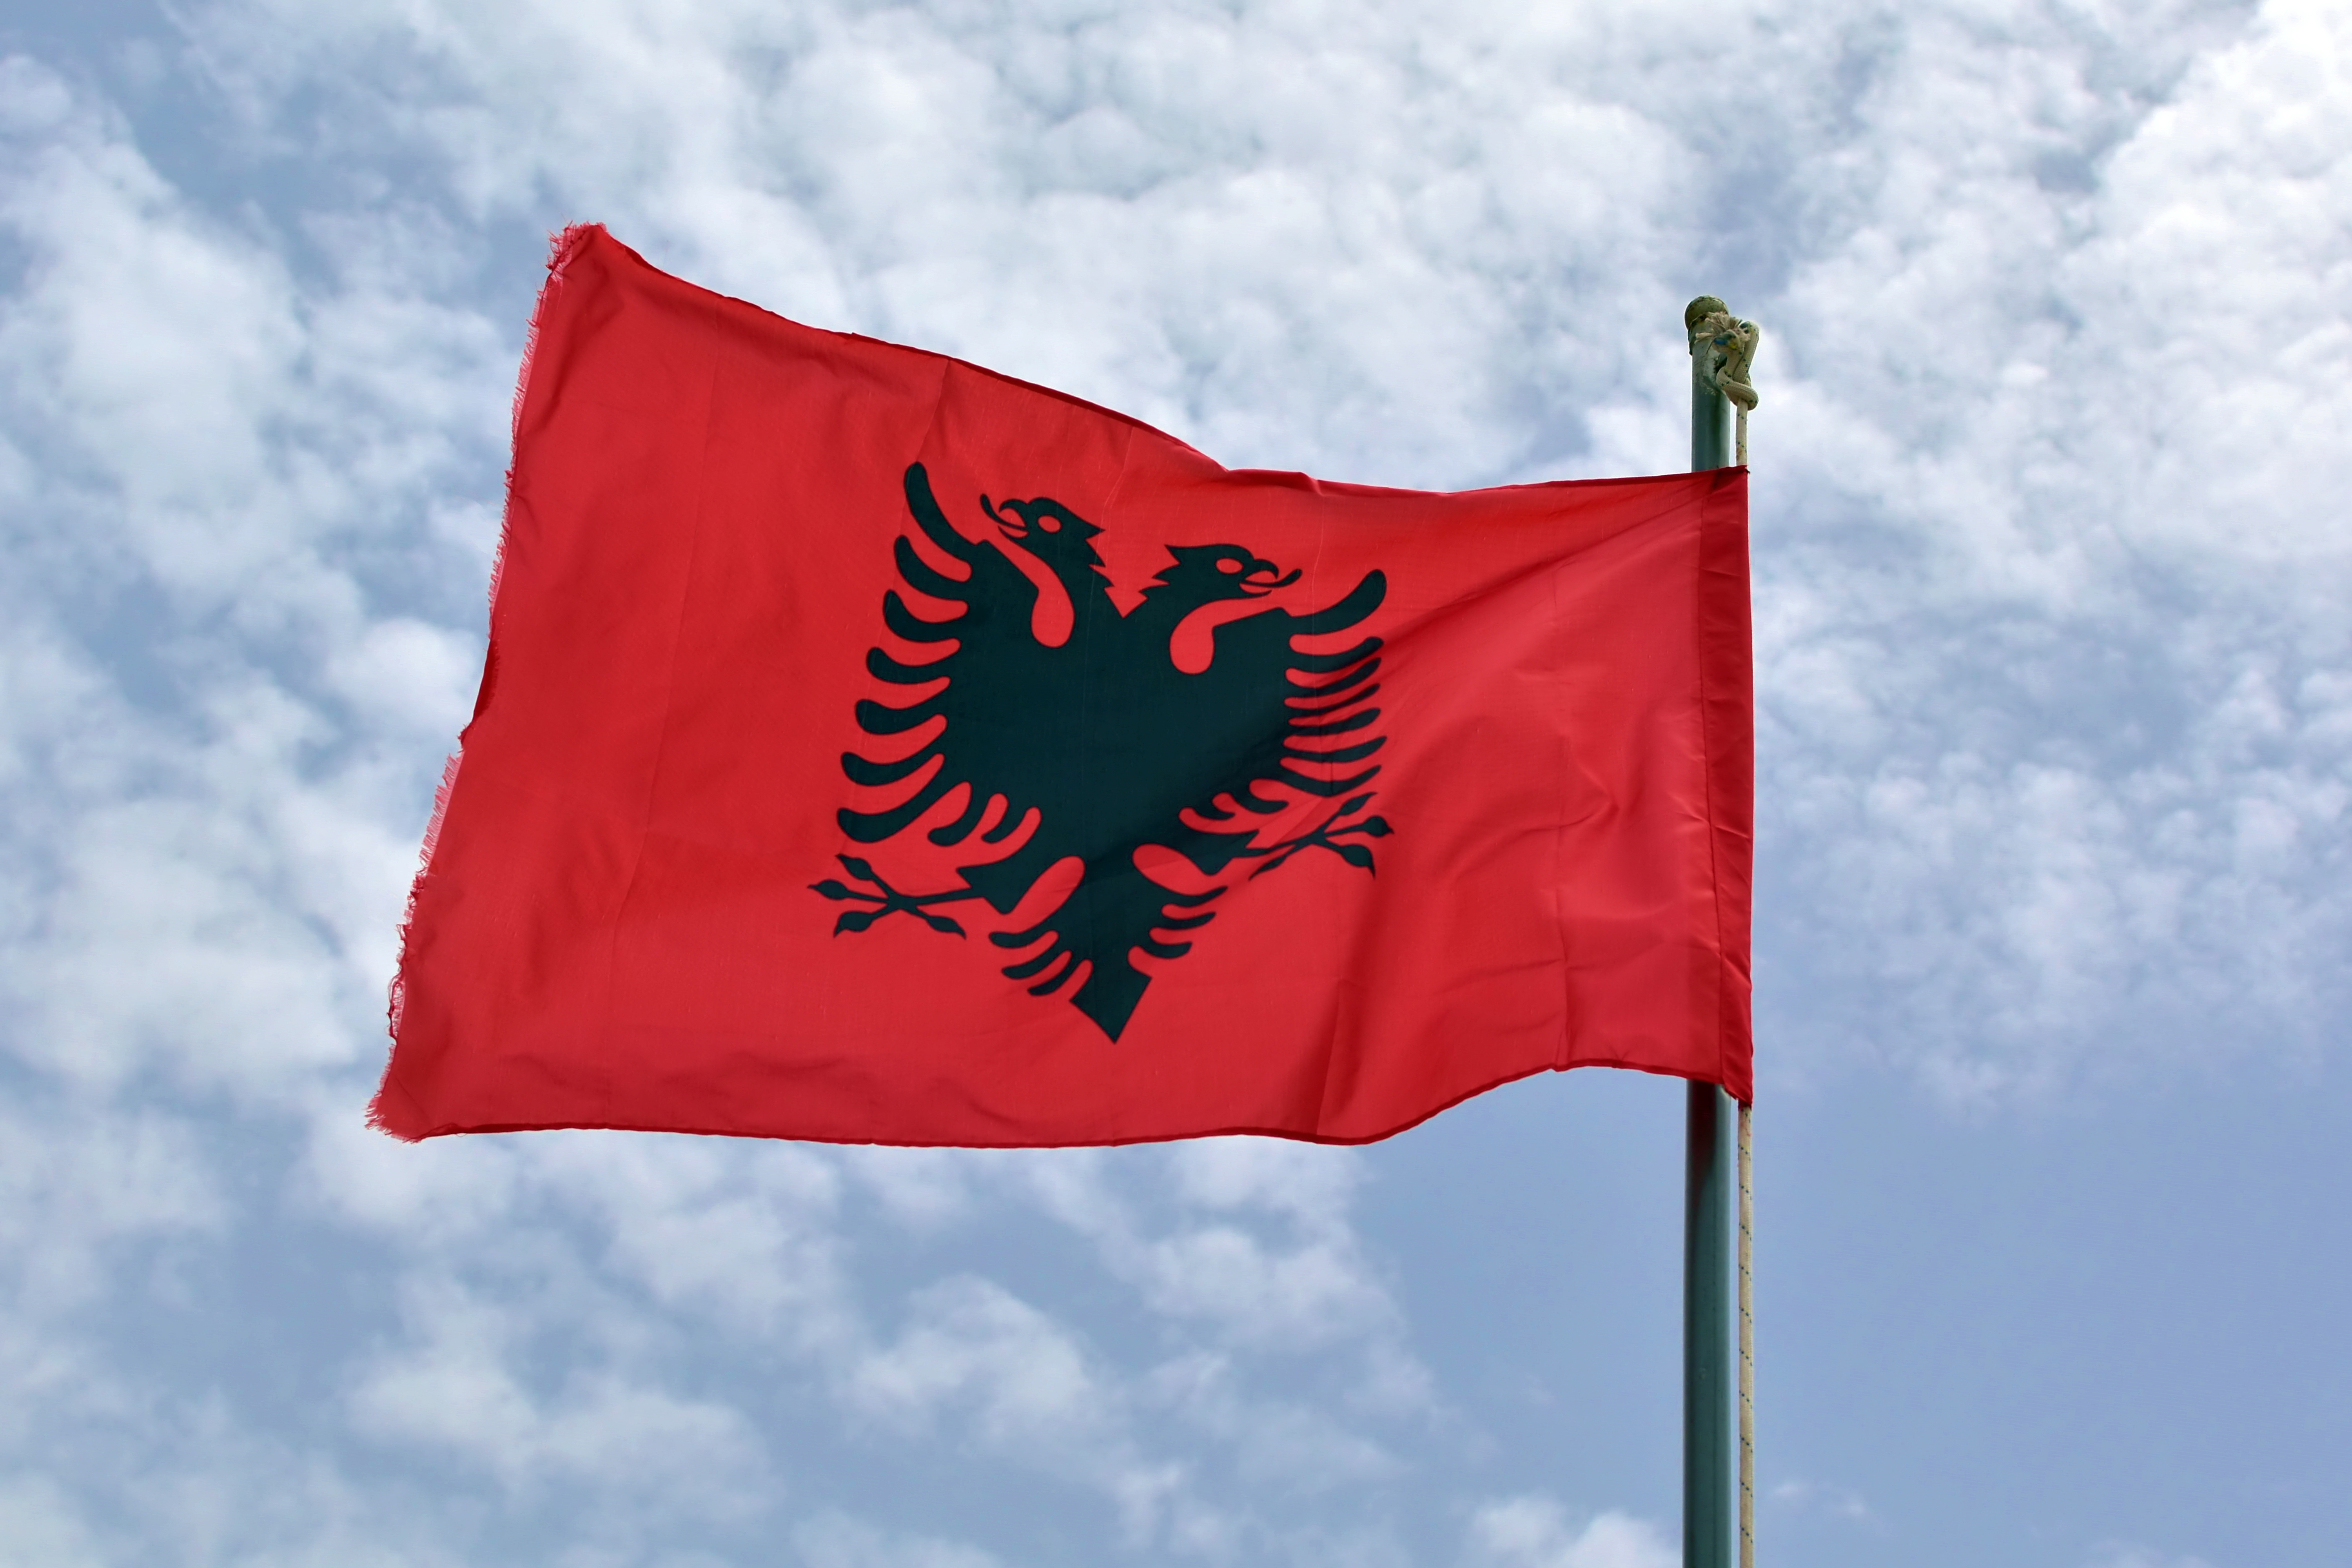 Флаг Албании, страны, визу в которую могут оформить иностранцы